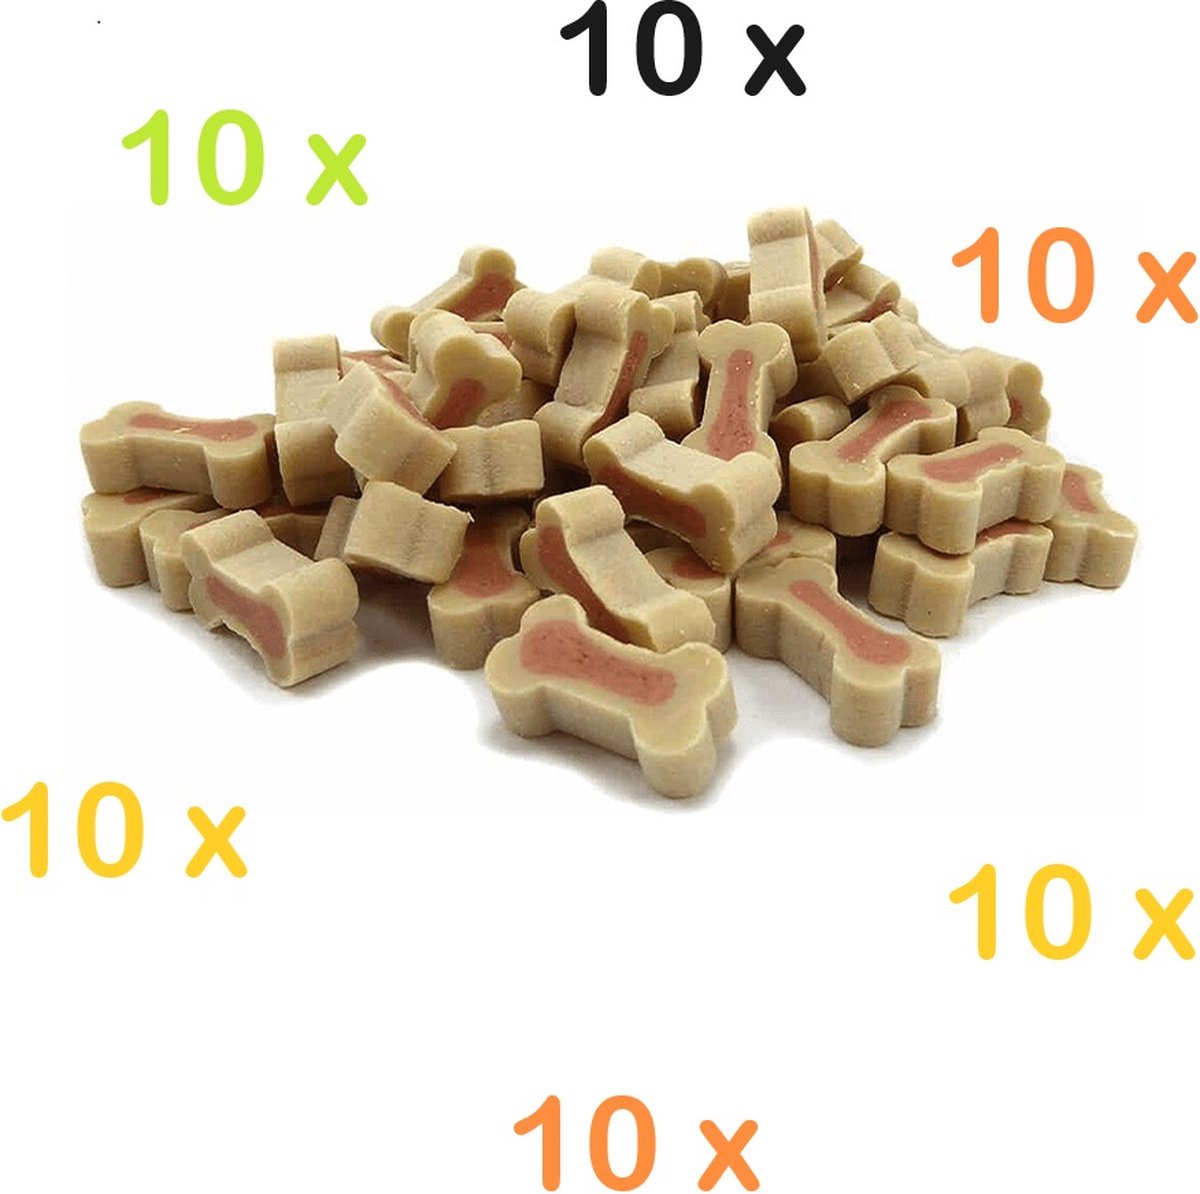 10 x Pet Snack hondensnoepjes zalm en rijst 200 gr ( 10 x 200gr = 2 kg ) zacht en smakelijk, ook voor in treat toys ideaal.